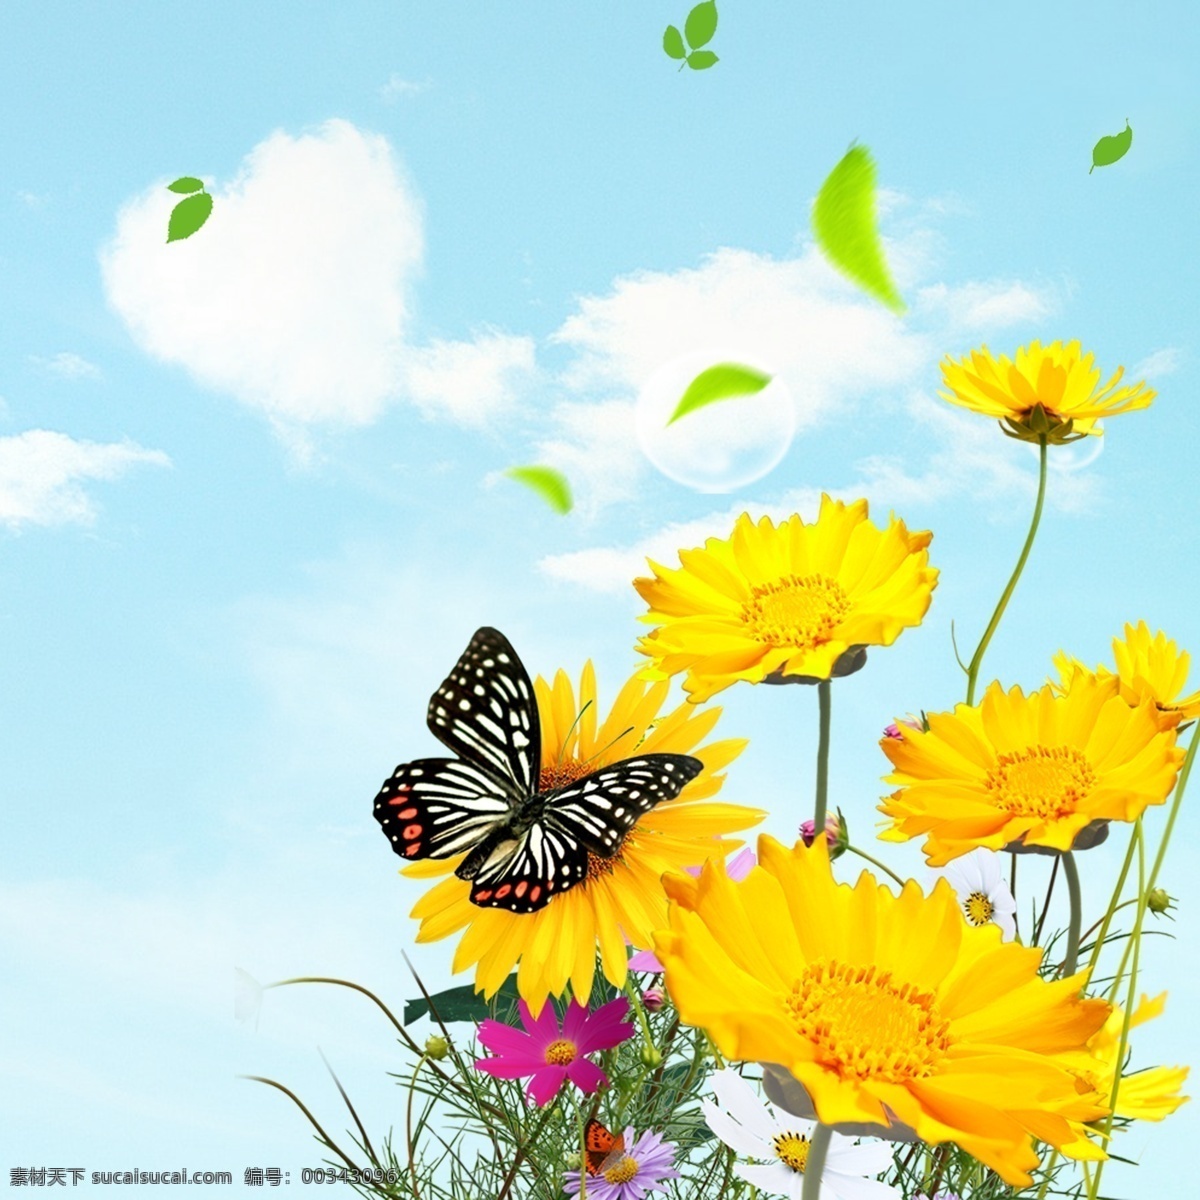 白云 蓝天 爱心 花朵 蝴蝶 花苞 青草 花瓣 飘落的花瓣 广告素材 广告元素 黄色花朵